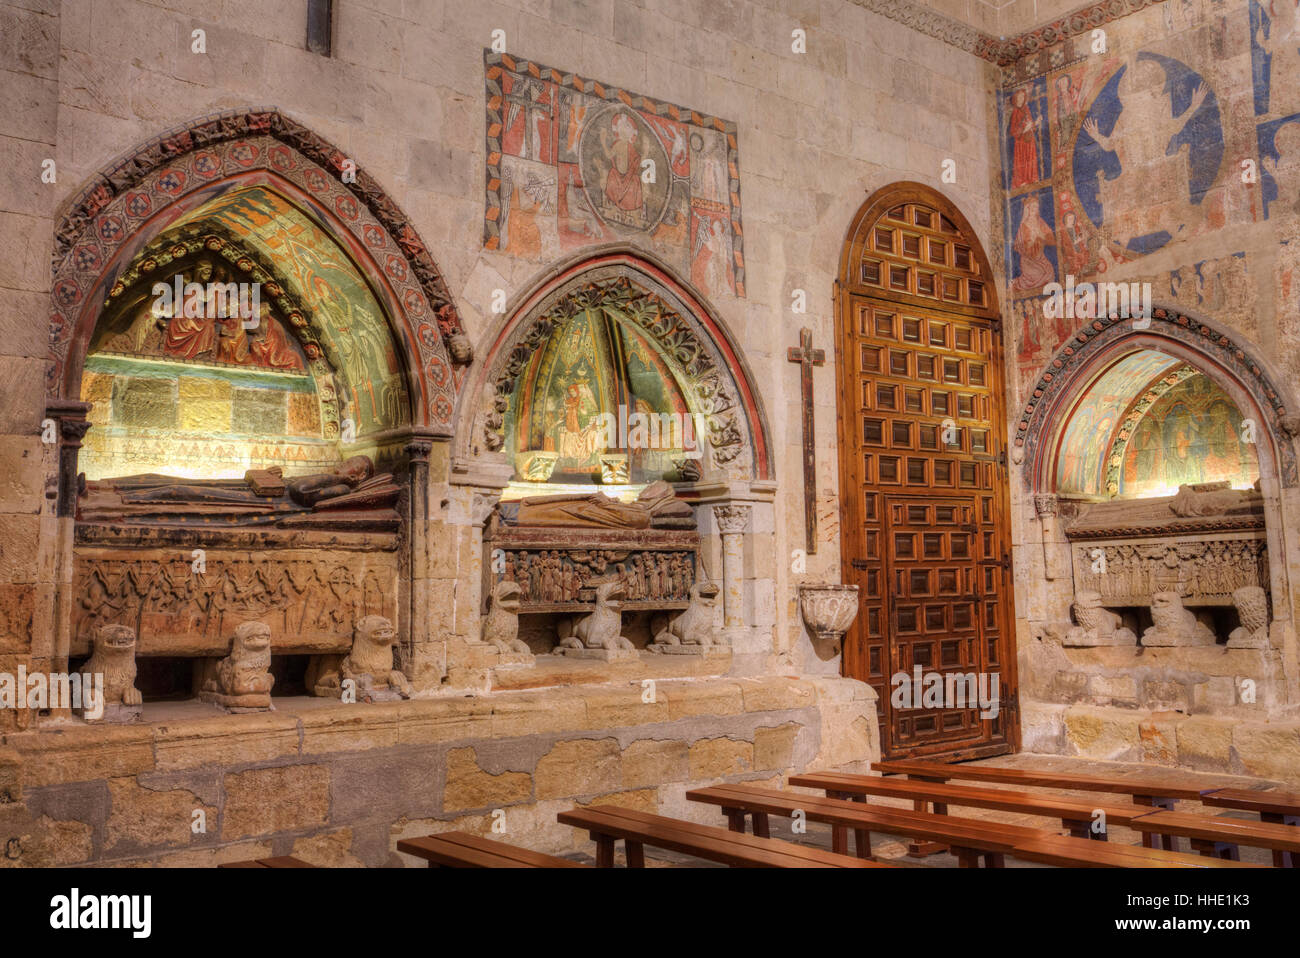 Mittelalterliche Gräber und Wandmalereien, alte kleiner von Salamanca, Salamanca, UNESCO, Castilla y León, Spanien Stockfoto